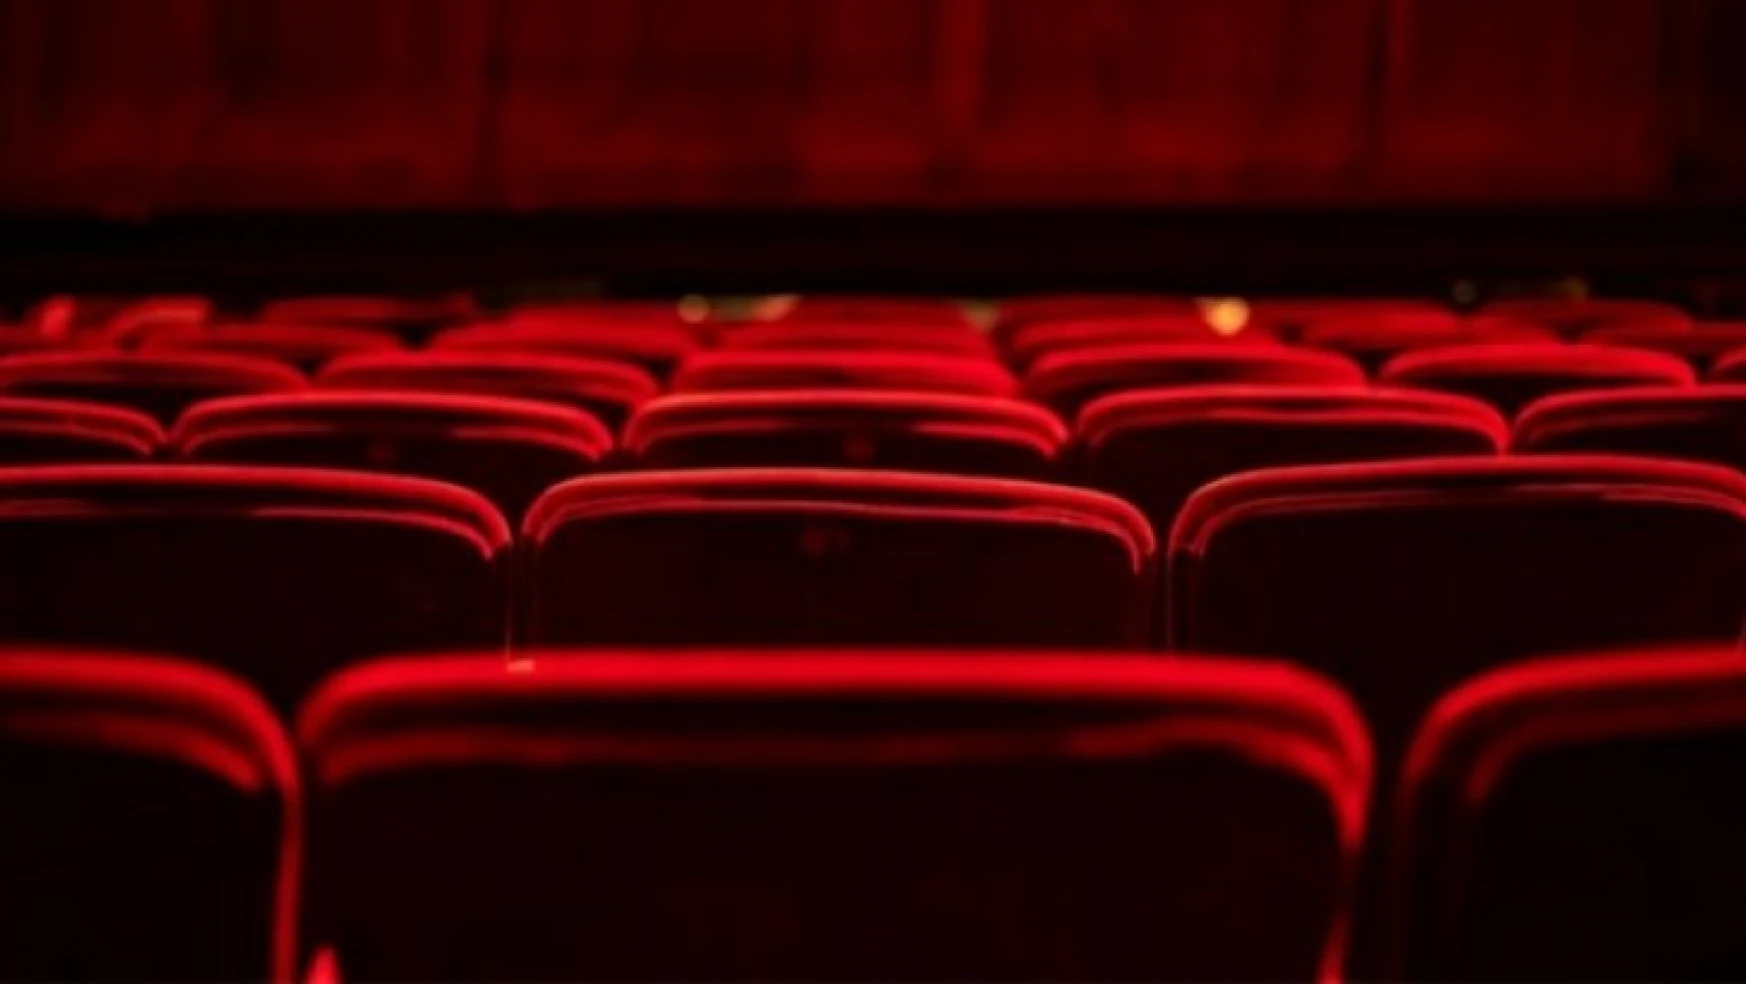 Sinema salonlarının sayısı yüzde 11,1 azaldı